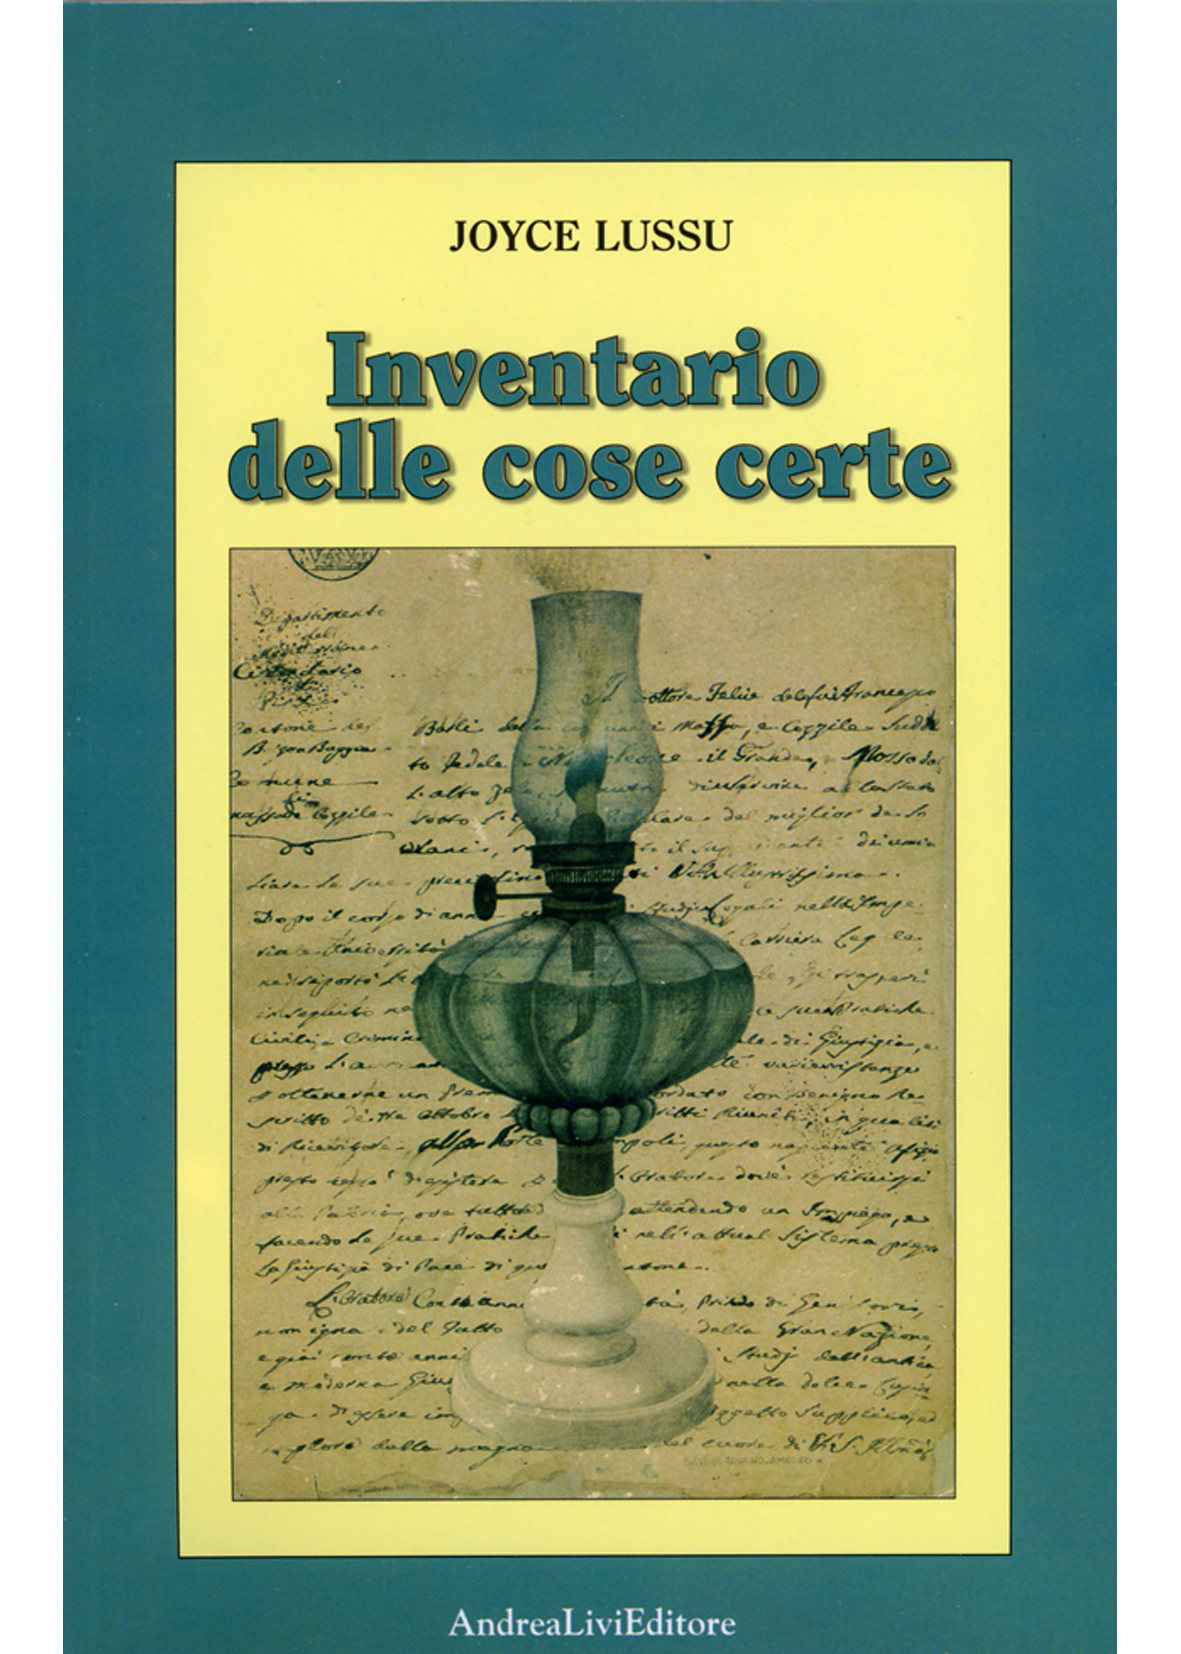 Joyce Lussu Inventario delle cose certe, a cura di Gianfranco Leli, terza edizione con due nuove poesie